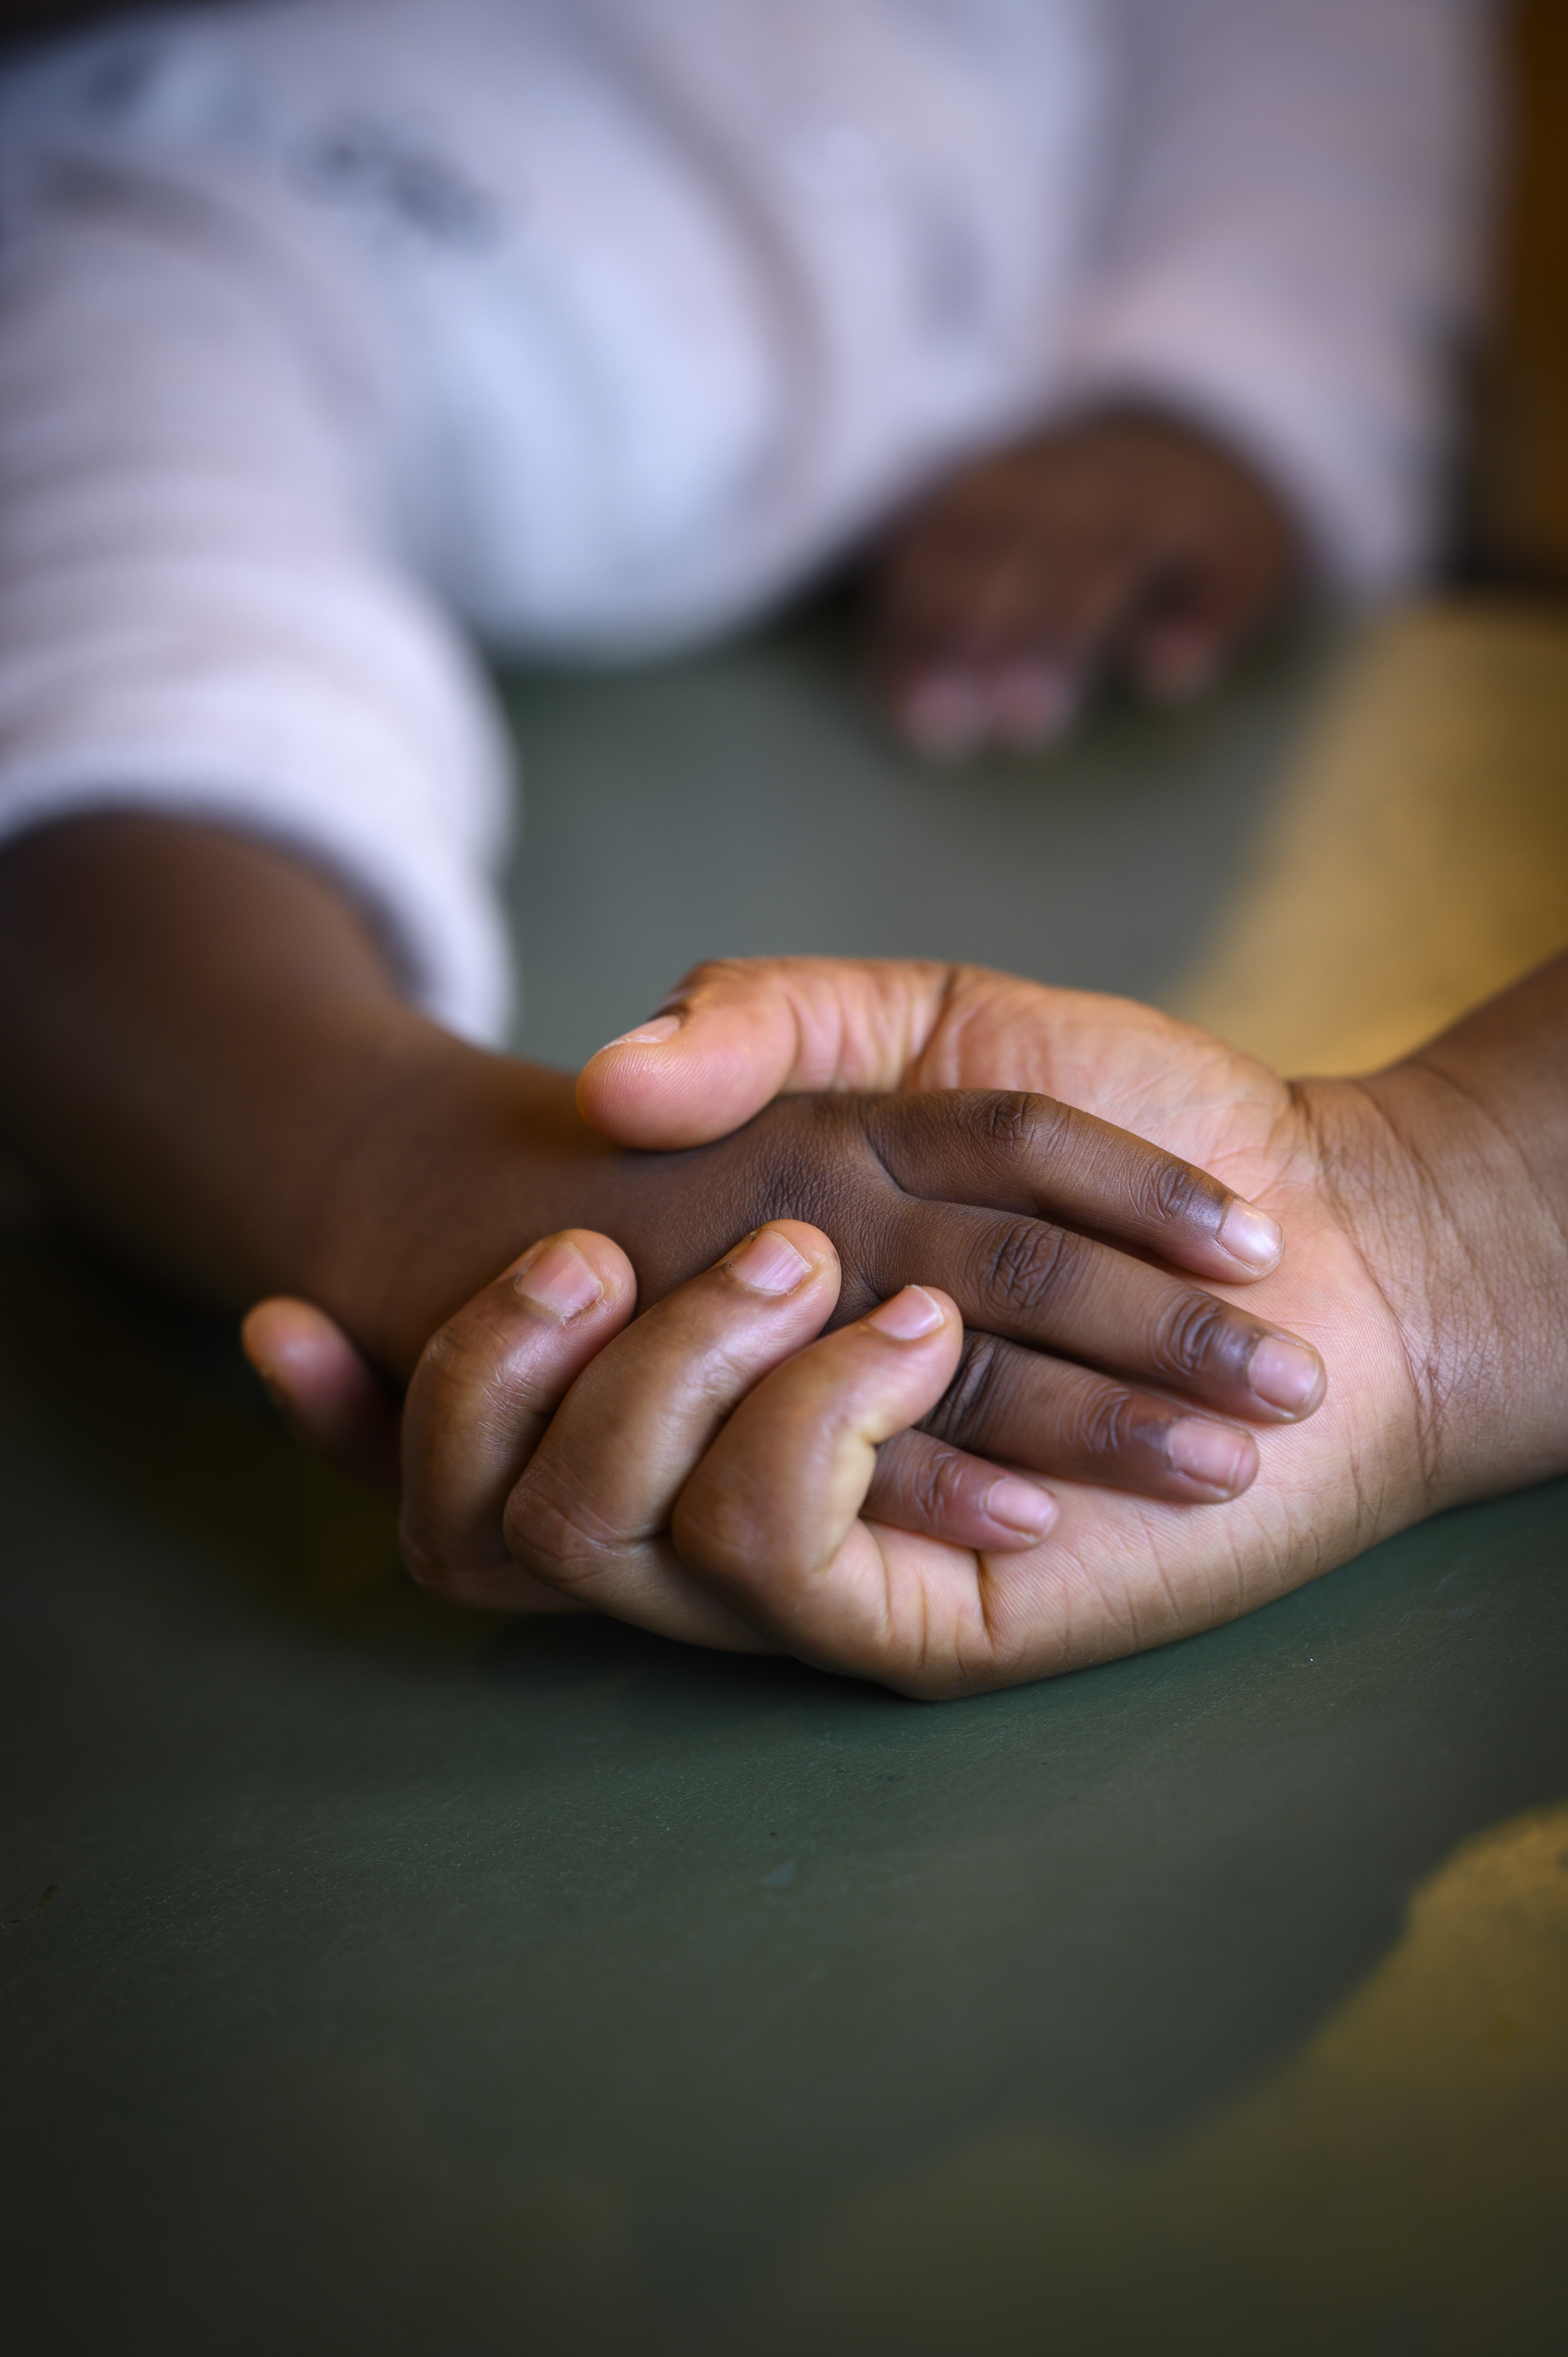 En barnhand som håller i en vuxenhand. Händerna ligger på ett bord.